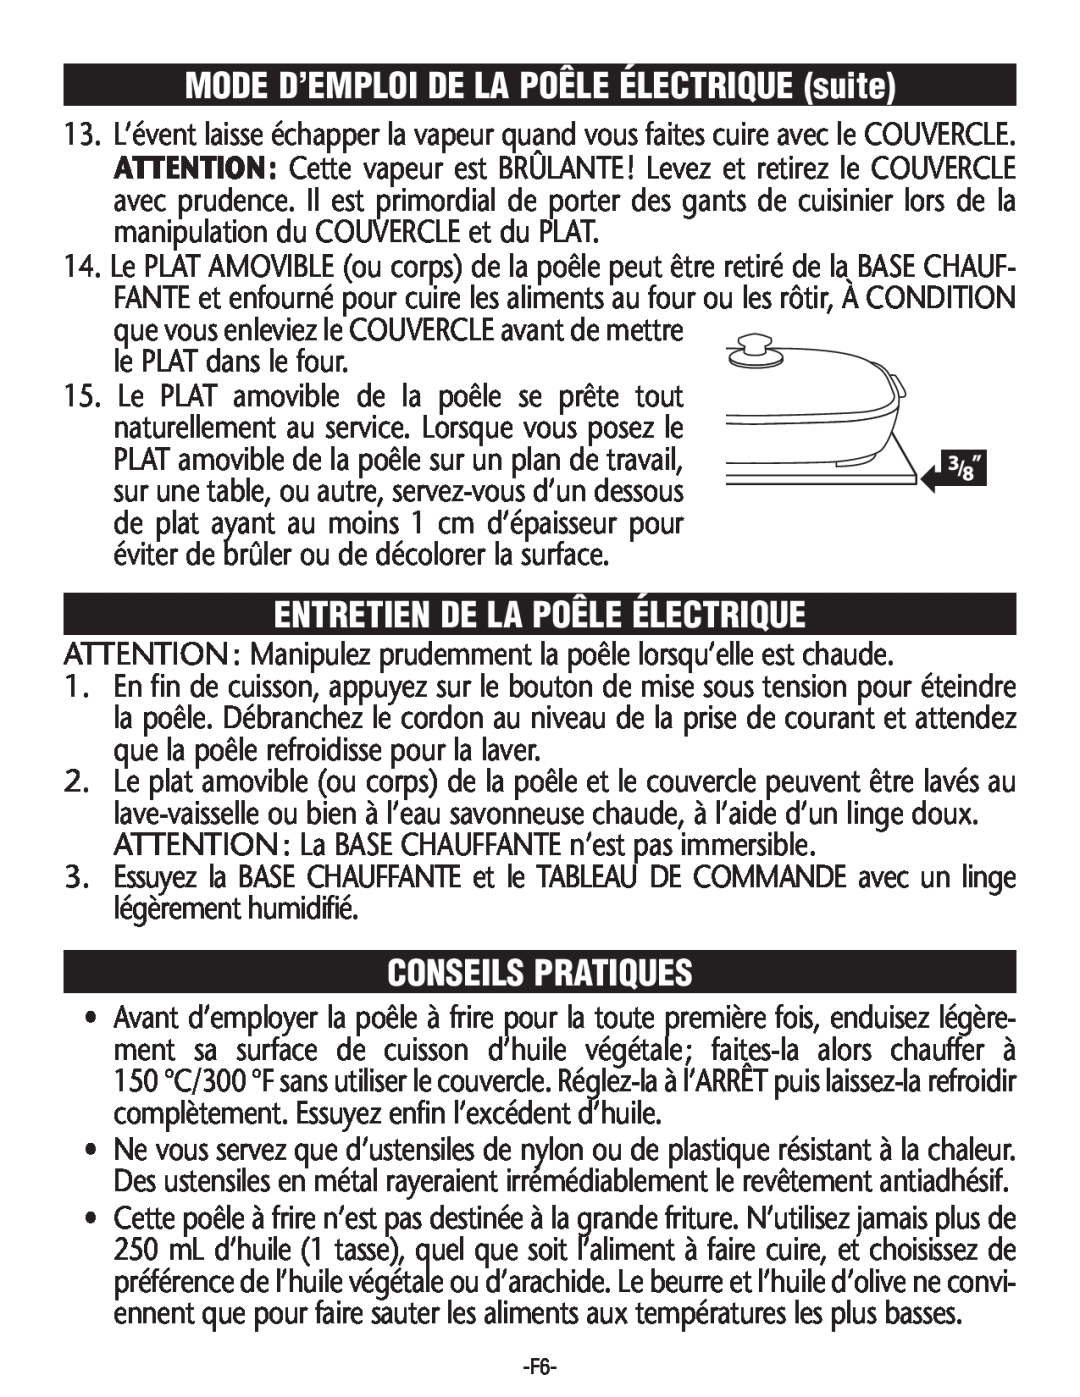 Rival S16SG-CN manual Entretien De La Poêle Électrique, Conseils Pratiques, MODE D’EMPLOI DE LA POÊLE ÉLECTRIQUE suite 